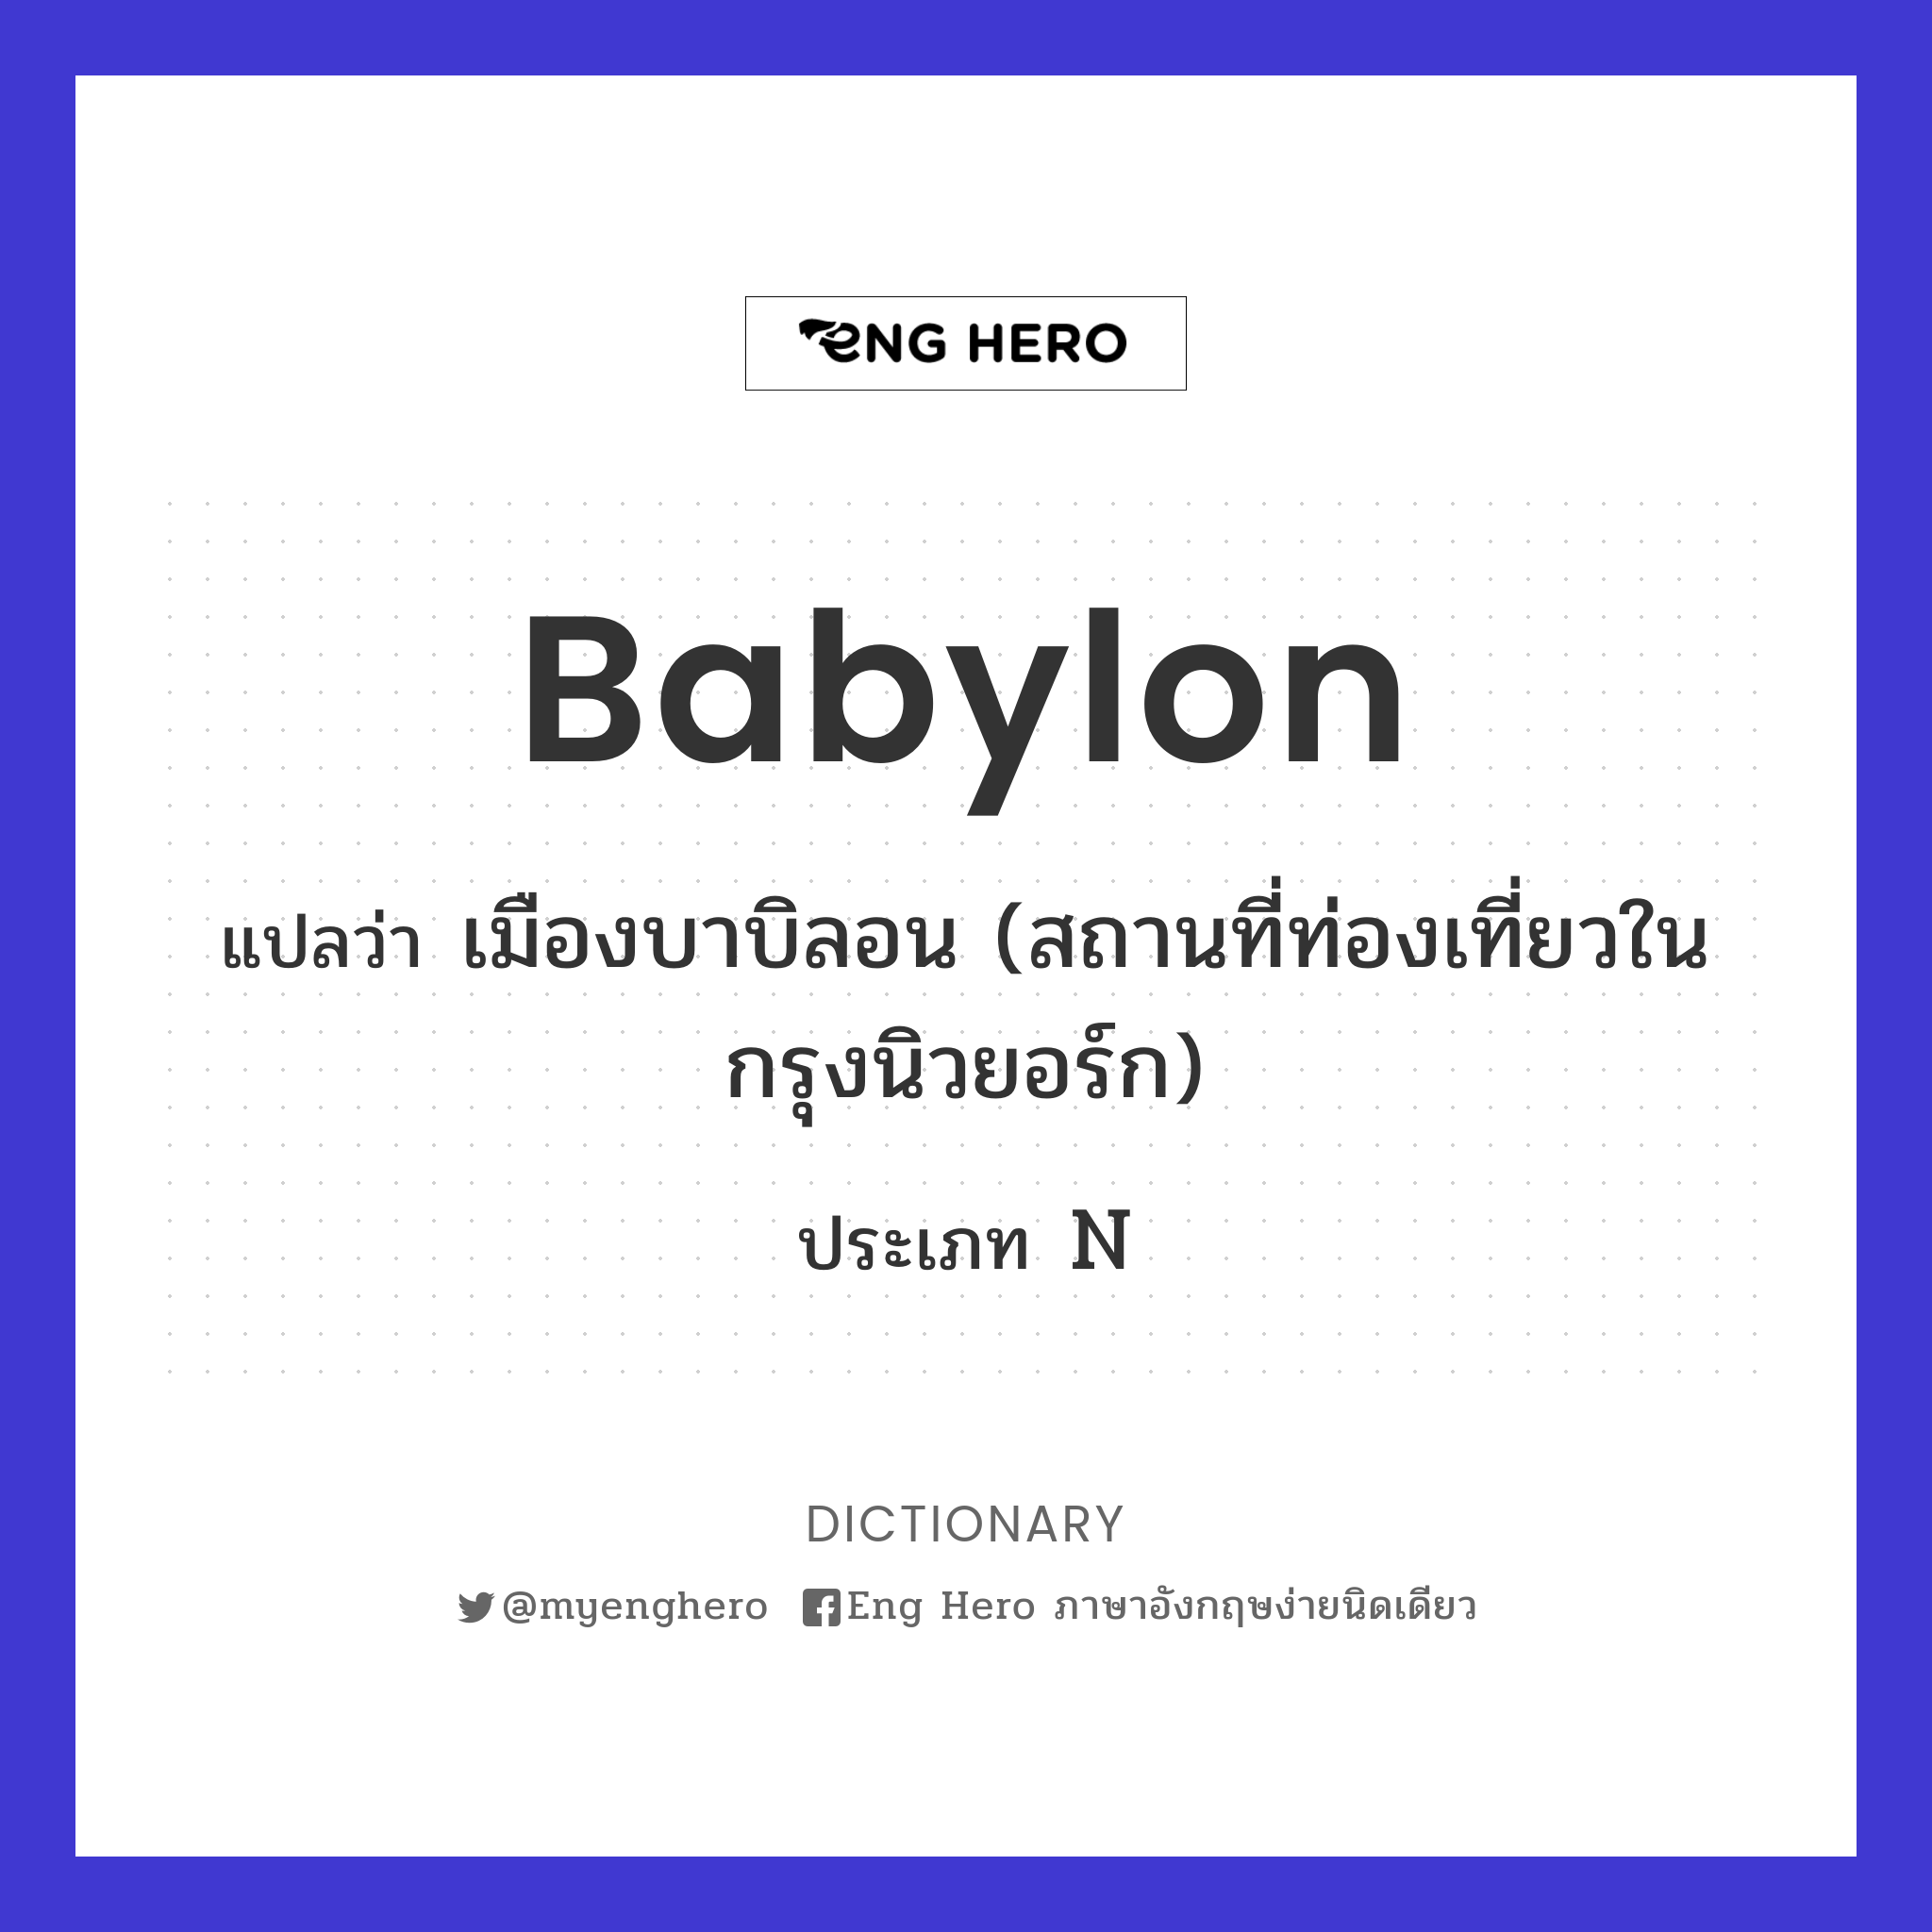 Babylon